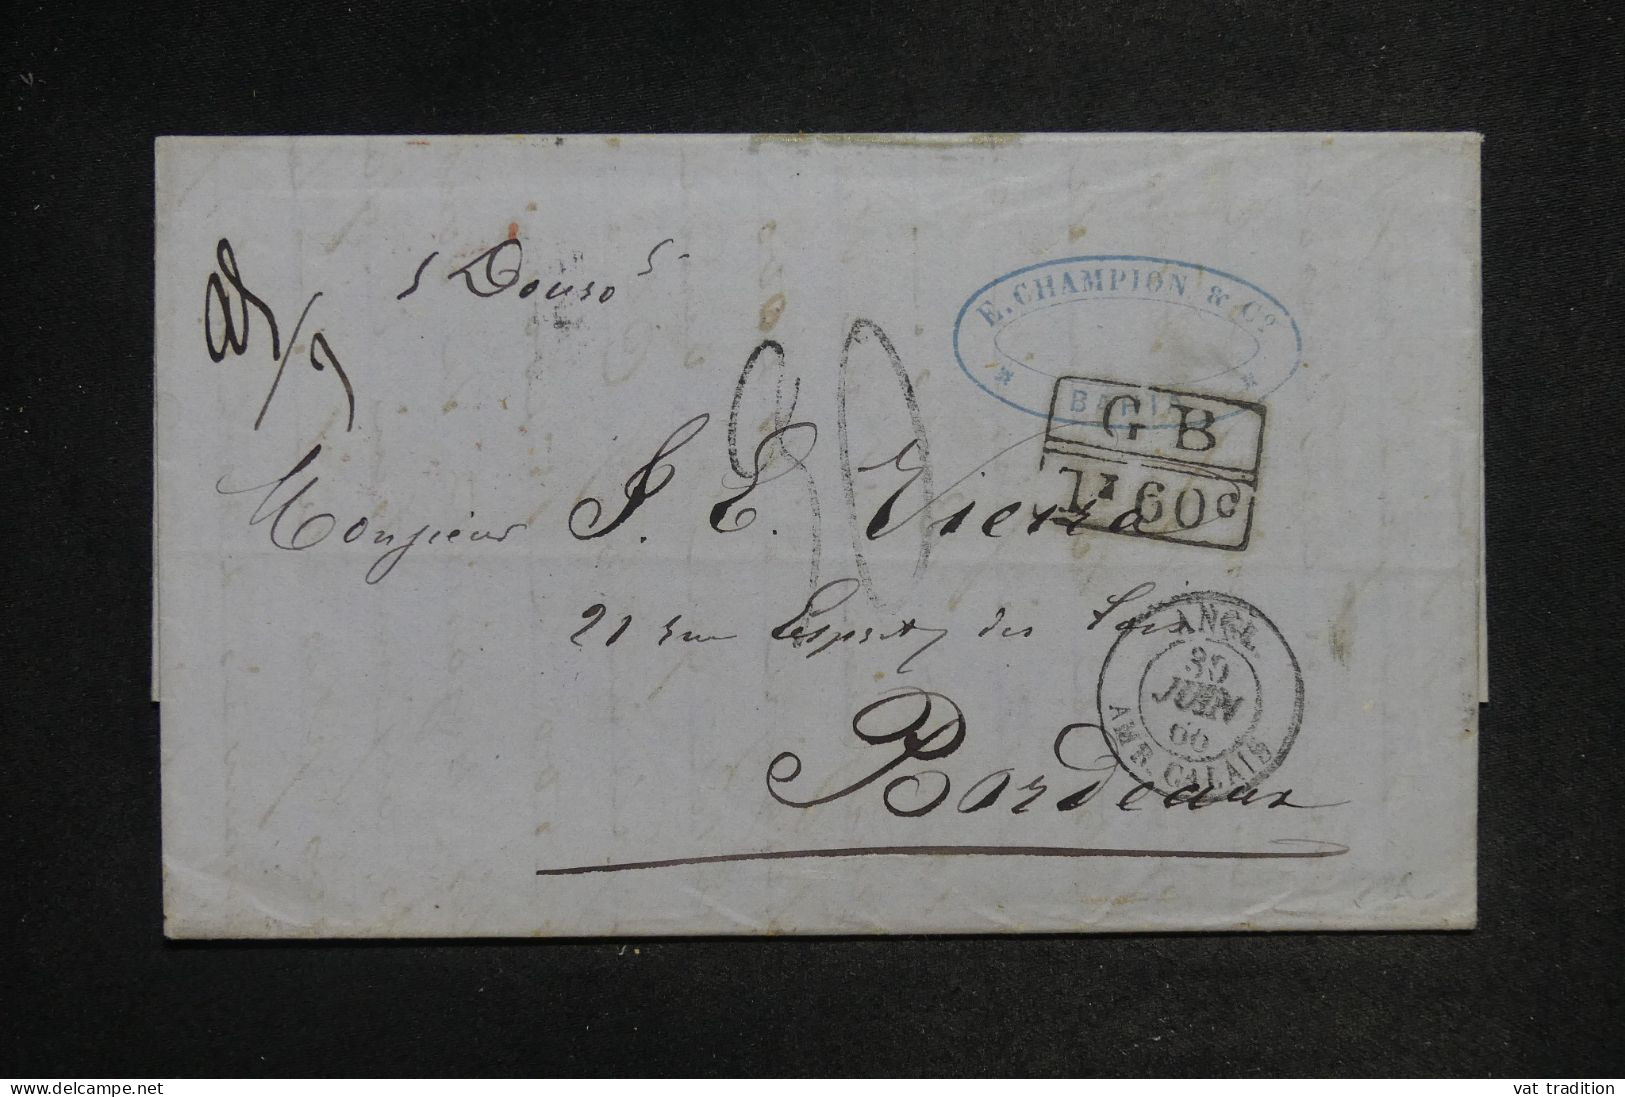 SALVADOR - Lettre De Bahia Pour La France En 1866 Par Voie Anglaise - L 151935 - El Salvador